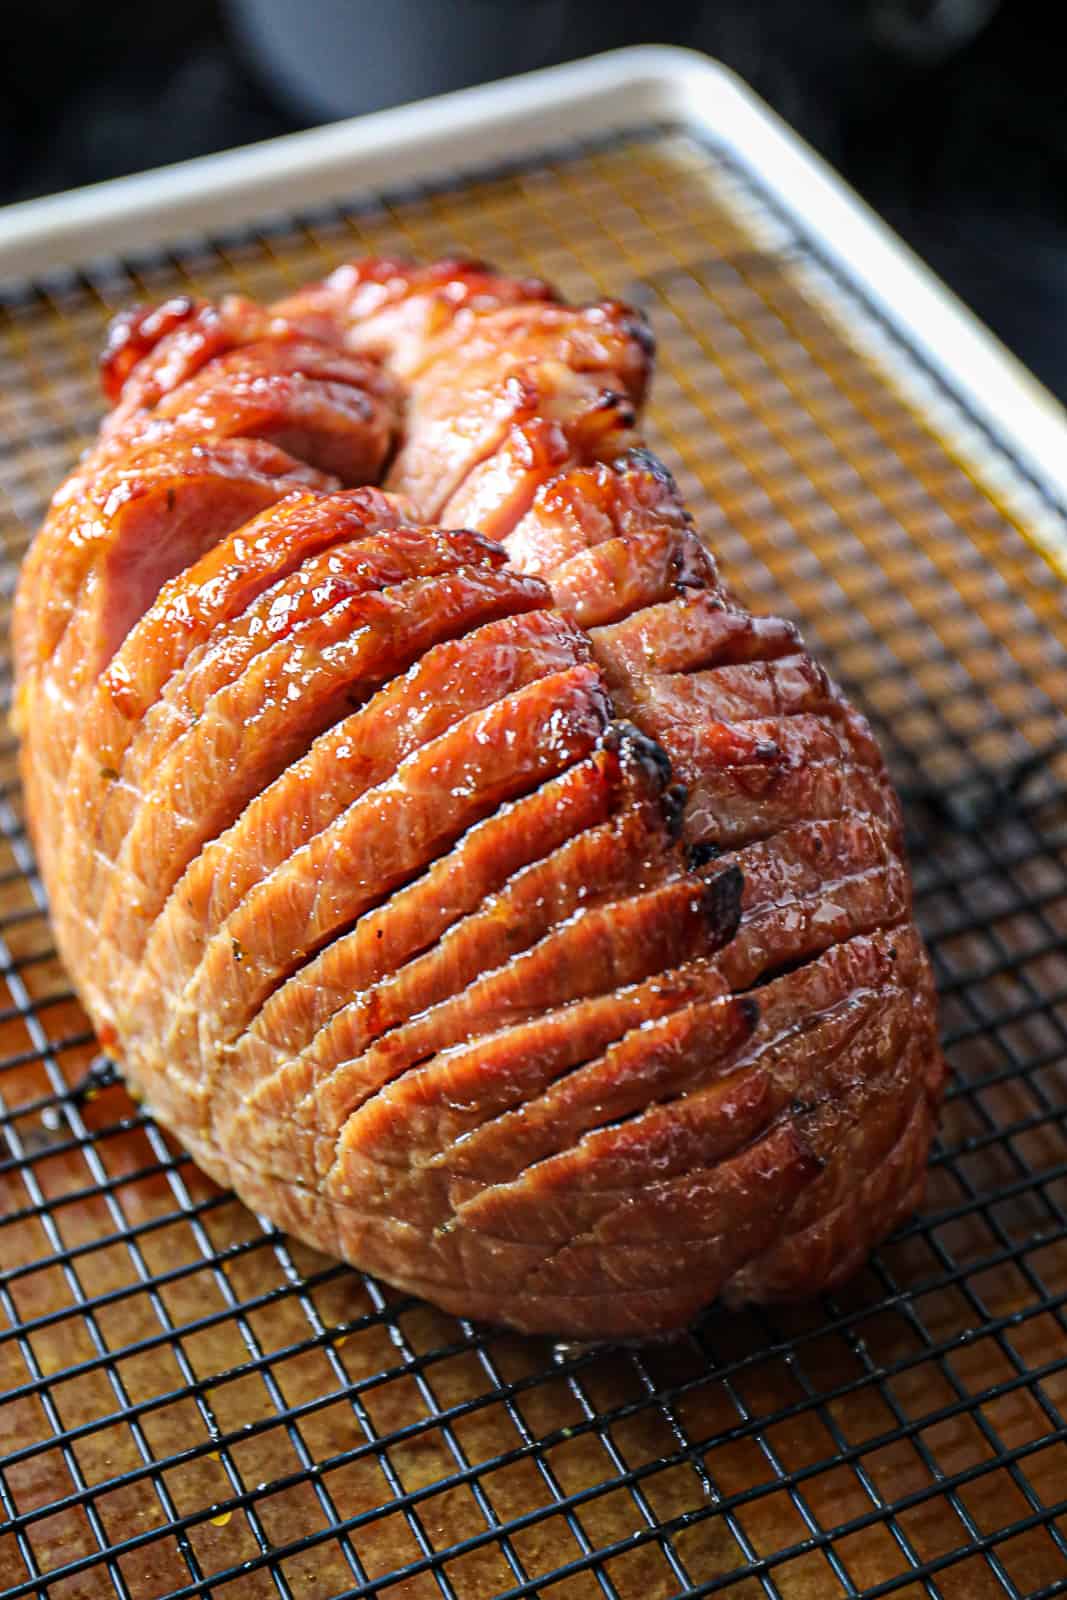 Honey glazed ham on baking sheet